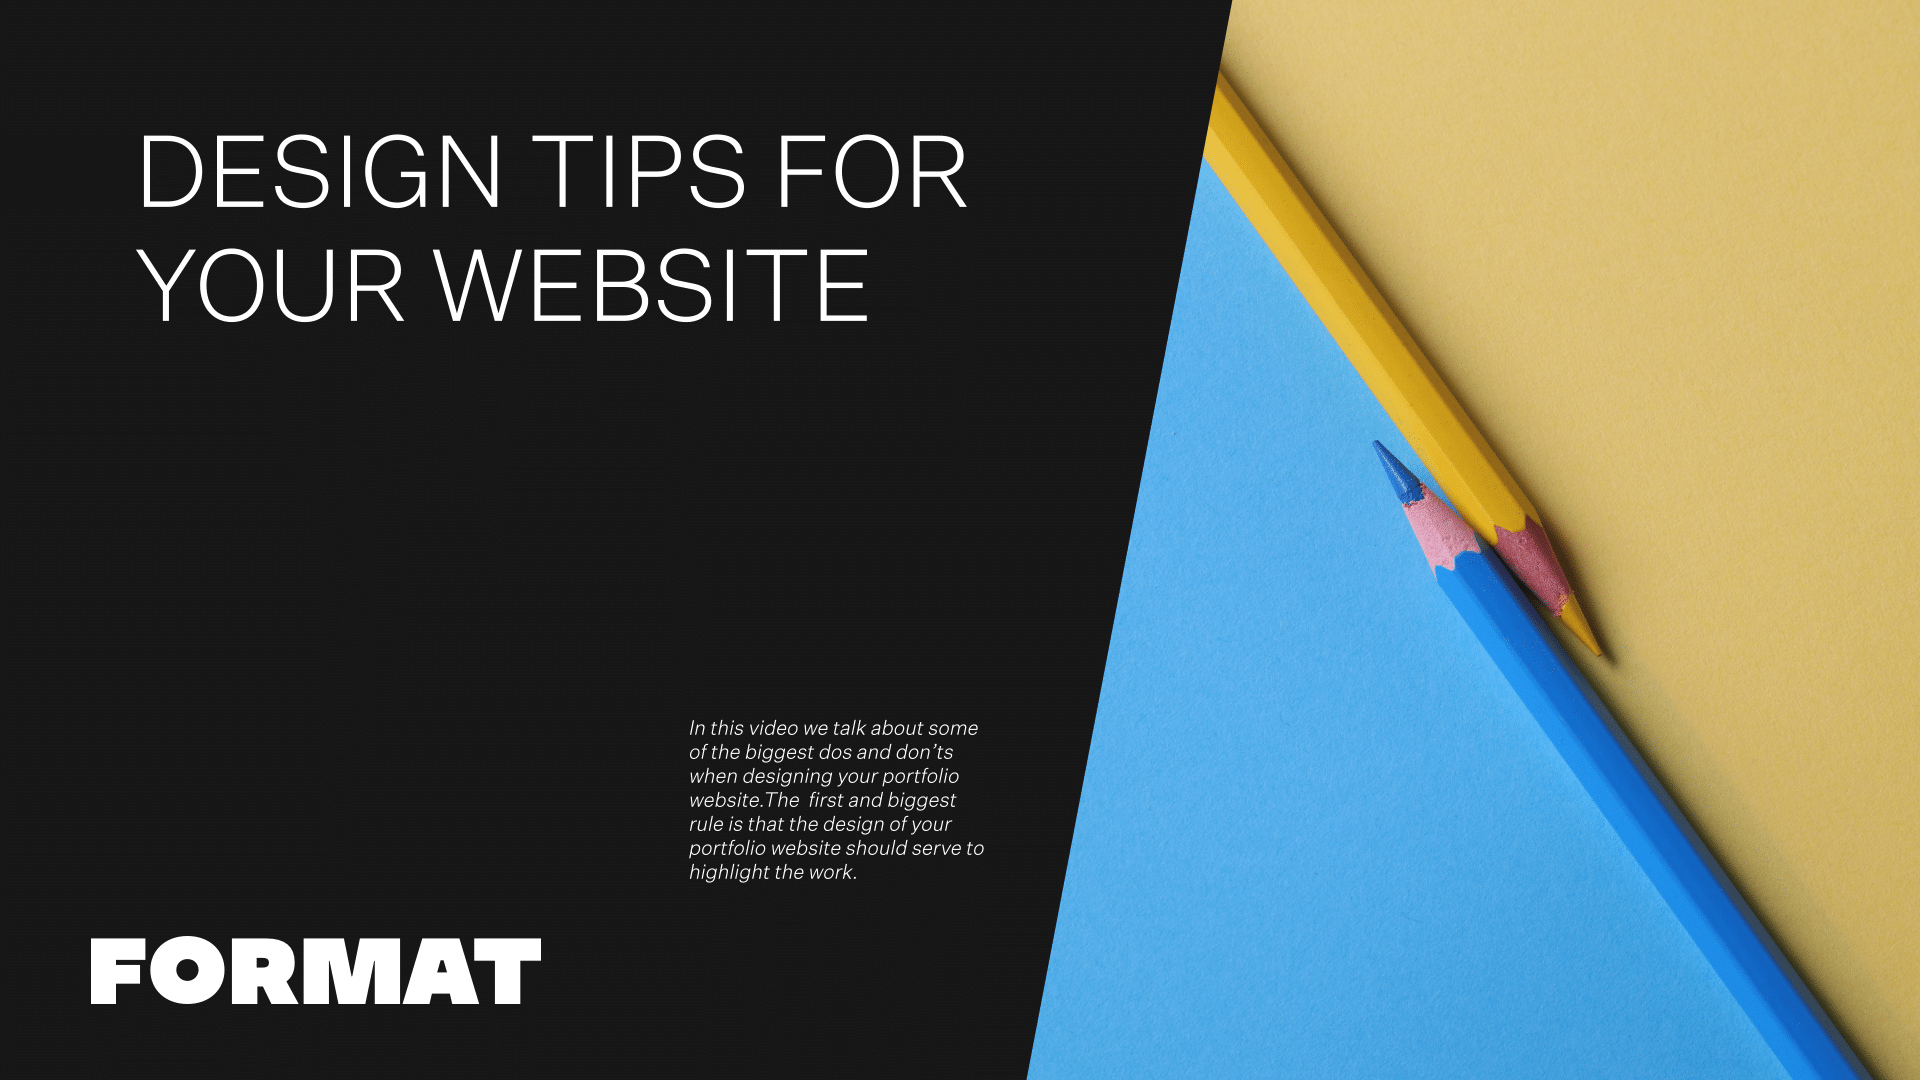 Le texte de l'image se lit "Conseils de conception pour votre site web" et comprend deux crayons de couleur.